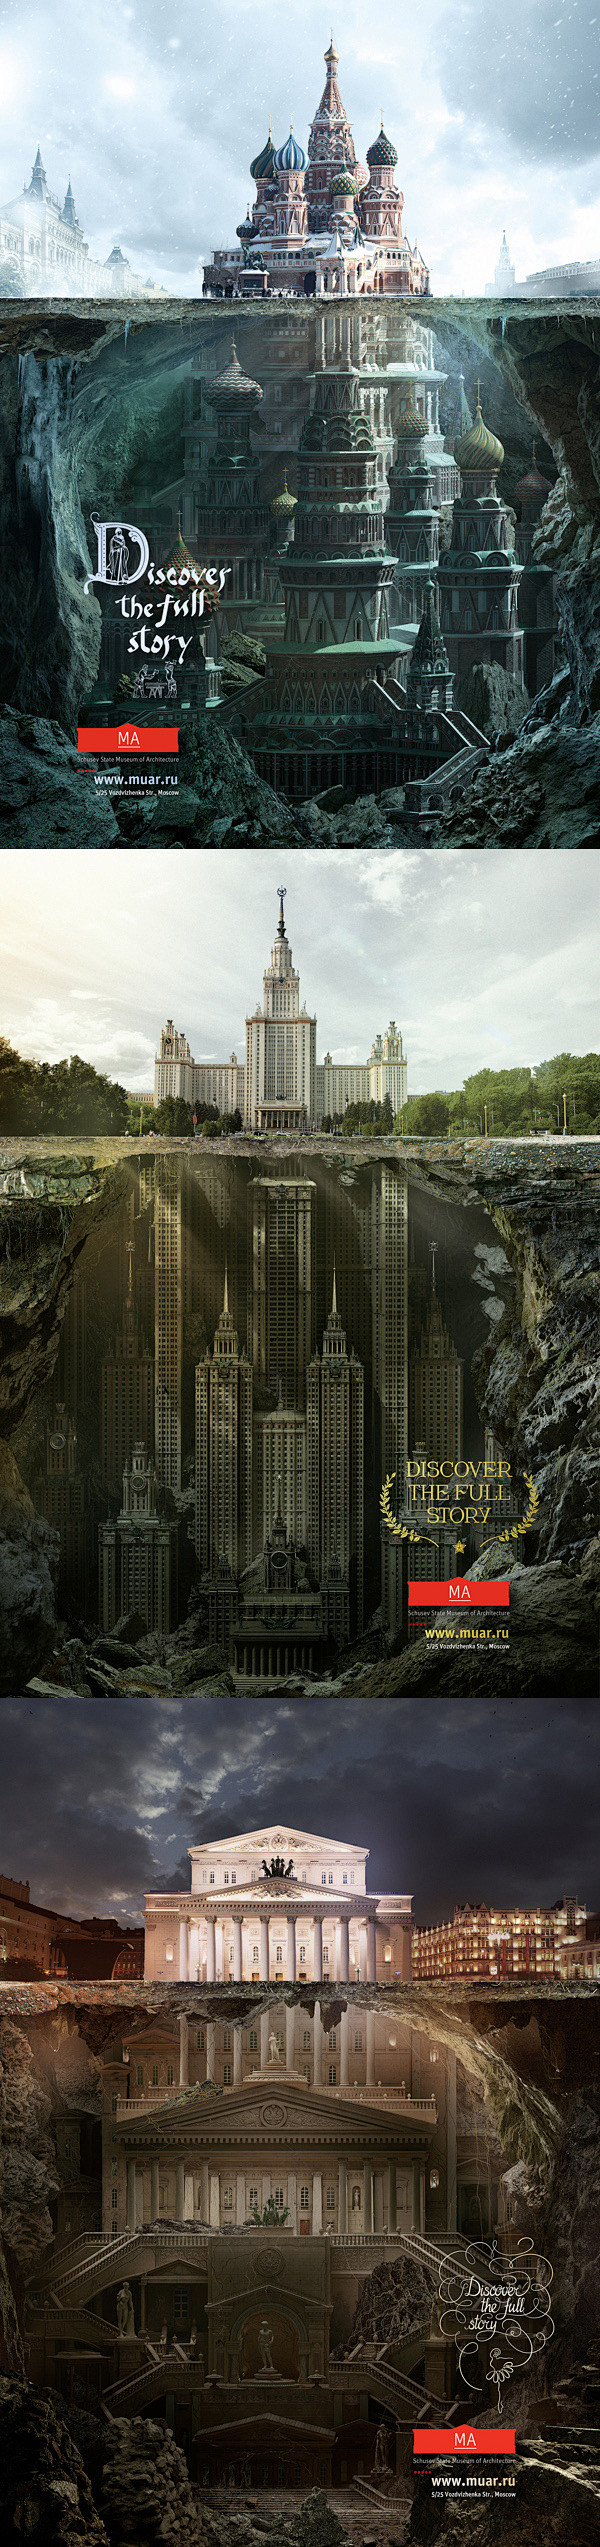 俄罗斯为国家建筑博物馆推出的宣传海报, ...